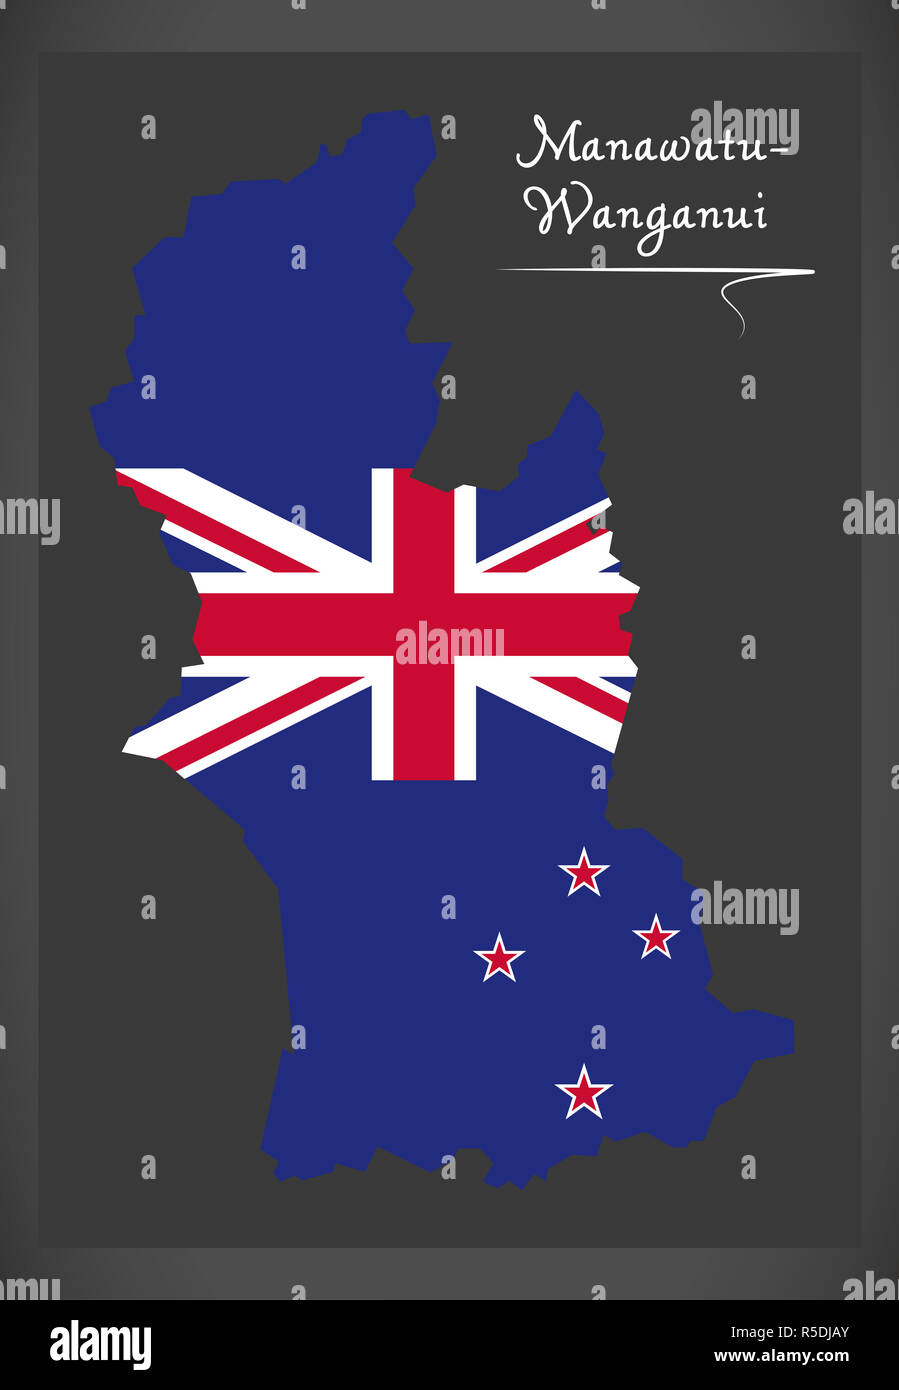 Manawatu - Wanganui New Zealand map with national flag illustration Stock Photo